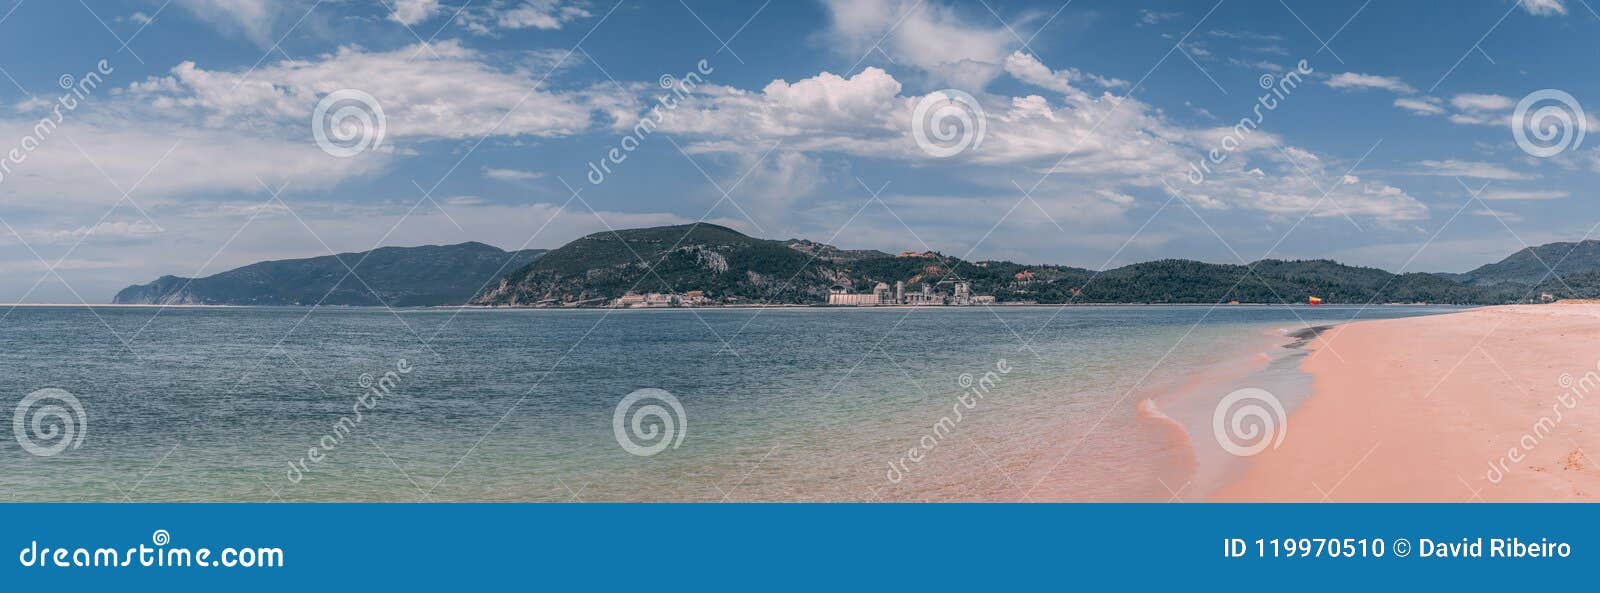 sandy bico das lulas beach in troia, portugal